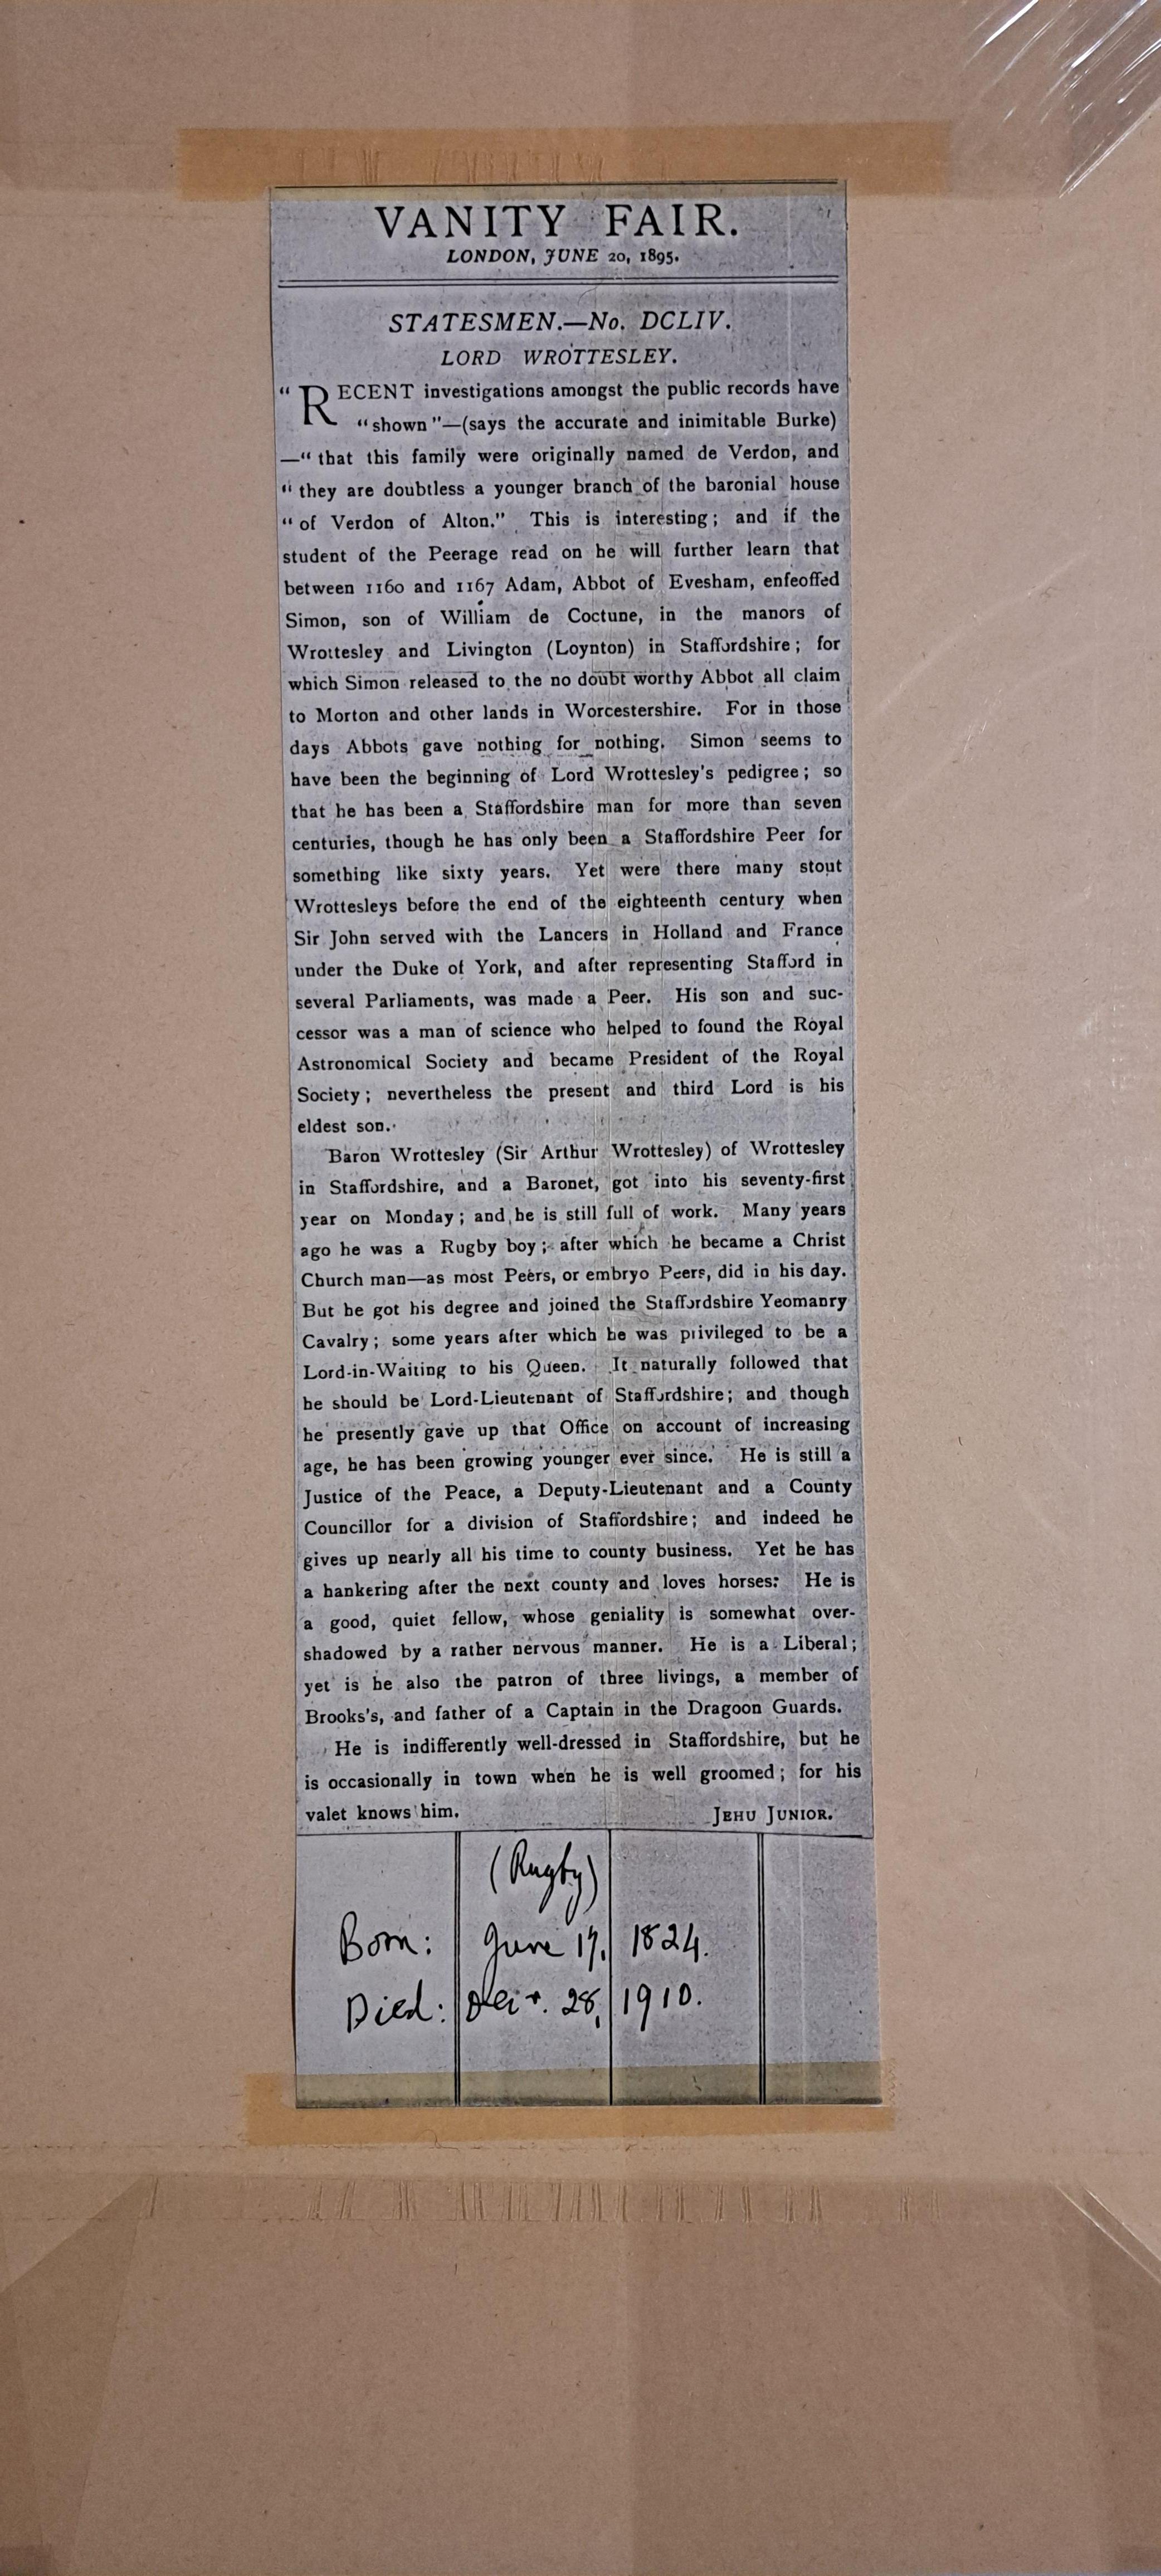 Vanity Fair Print, Statesman Nr. 654 Arthur Wrottesley, 3. Baron Wrottesley 
Passepartoutgröße 49 x 34 cm in insgesamt gutem Zustand 
ungerahmt, aber mit Passepartout und Beschreibung des Dargestellten
siehe unten für Details
Ich habe eine Auswahl